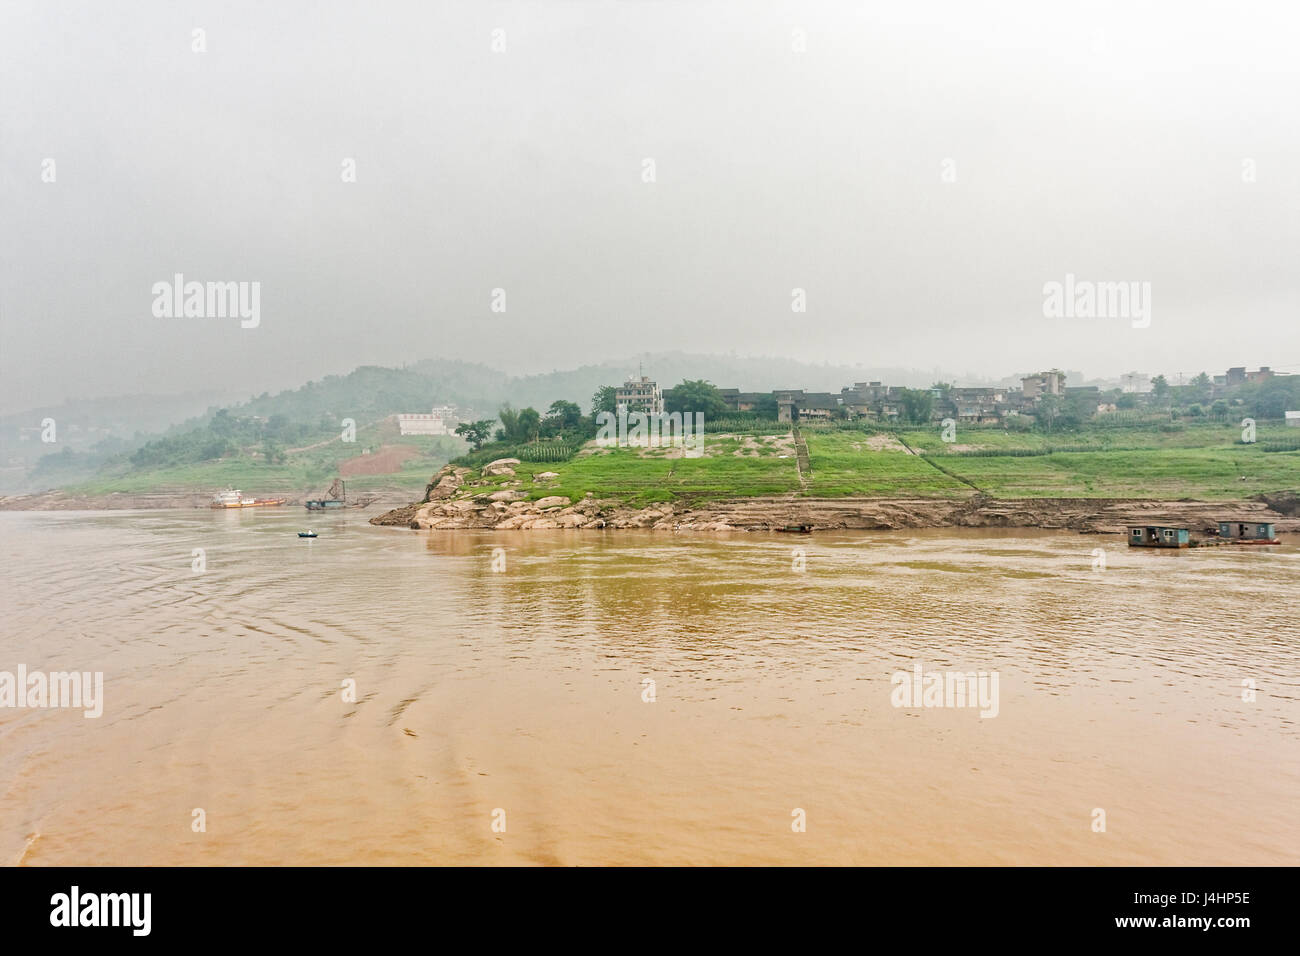 Case galleggianti ormeggiate sulle ripide sponde del fiume Yangtze, nei pressi di una piccola città sul fiume. La nebbia si raccoglie nelle lontane colline. Foto Stock